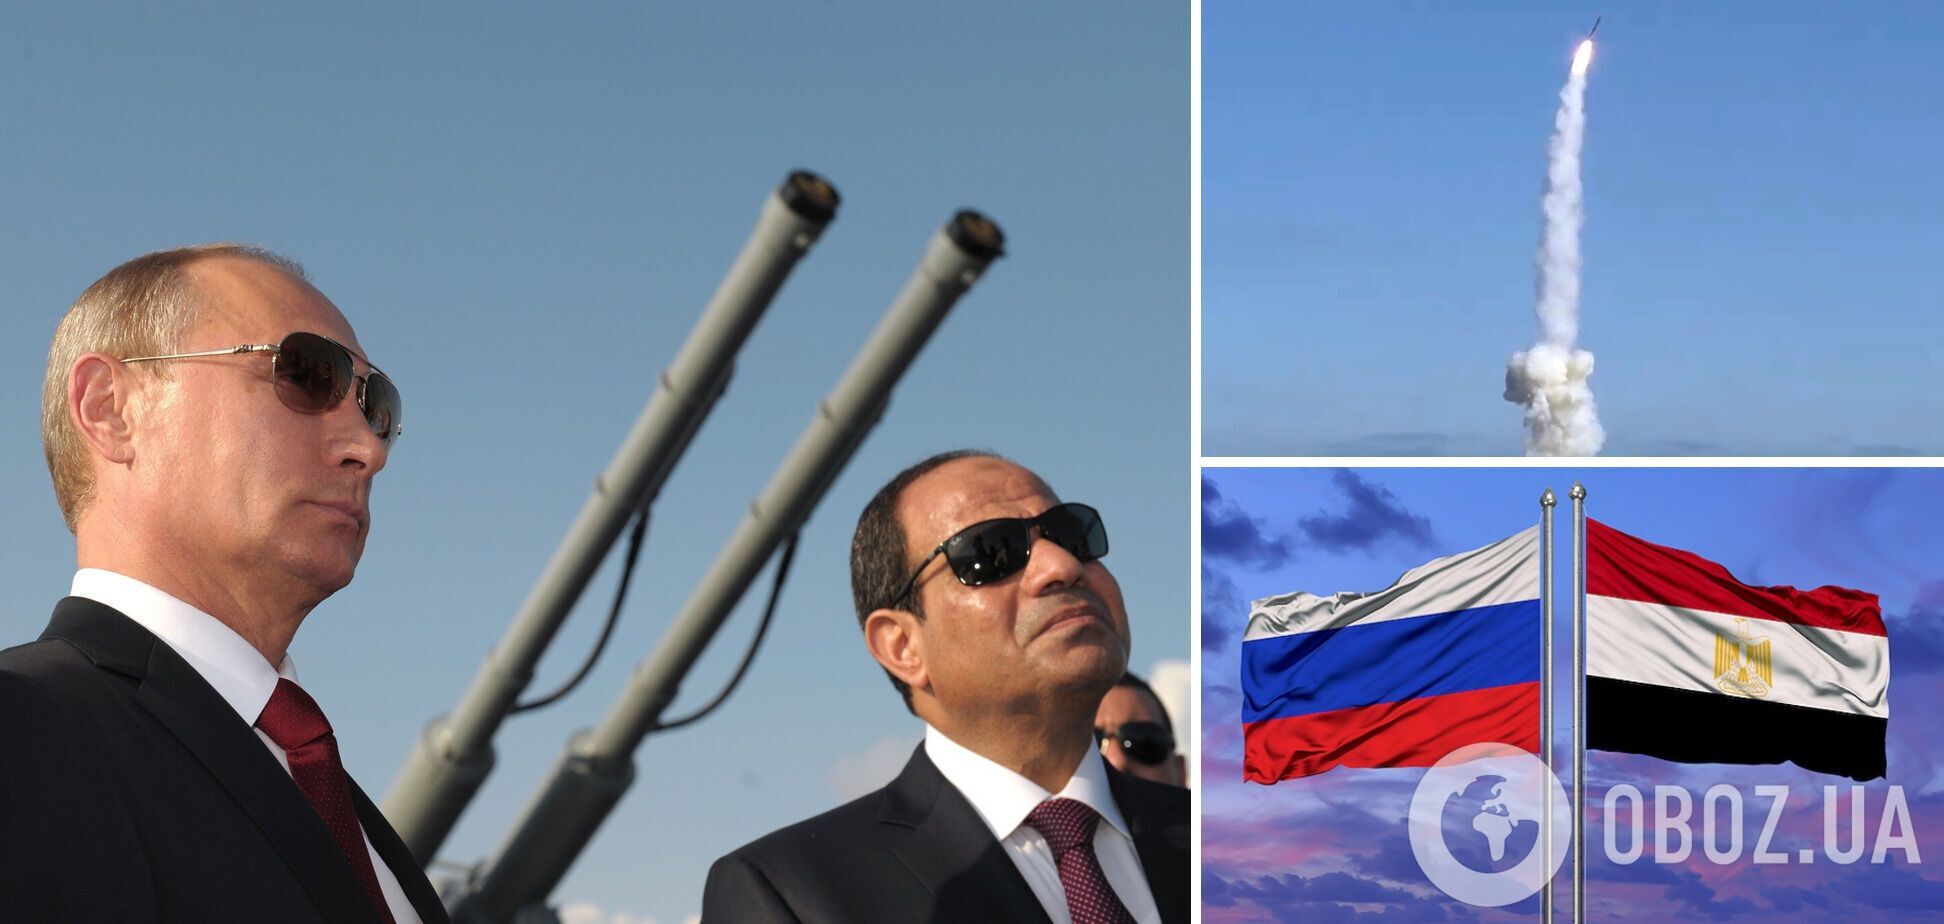 Египет планировал предоставить России до 40 тыс. ракет: утечка секретных документов раскрыла громкую схему – WP